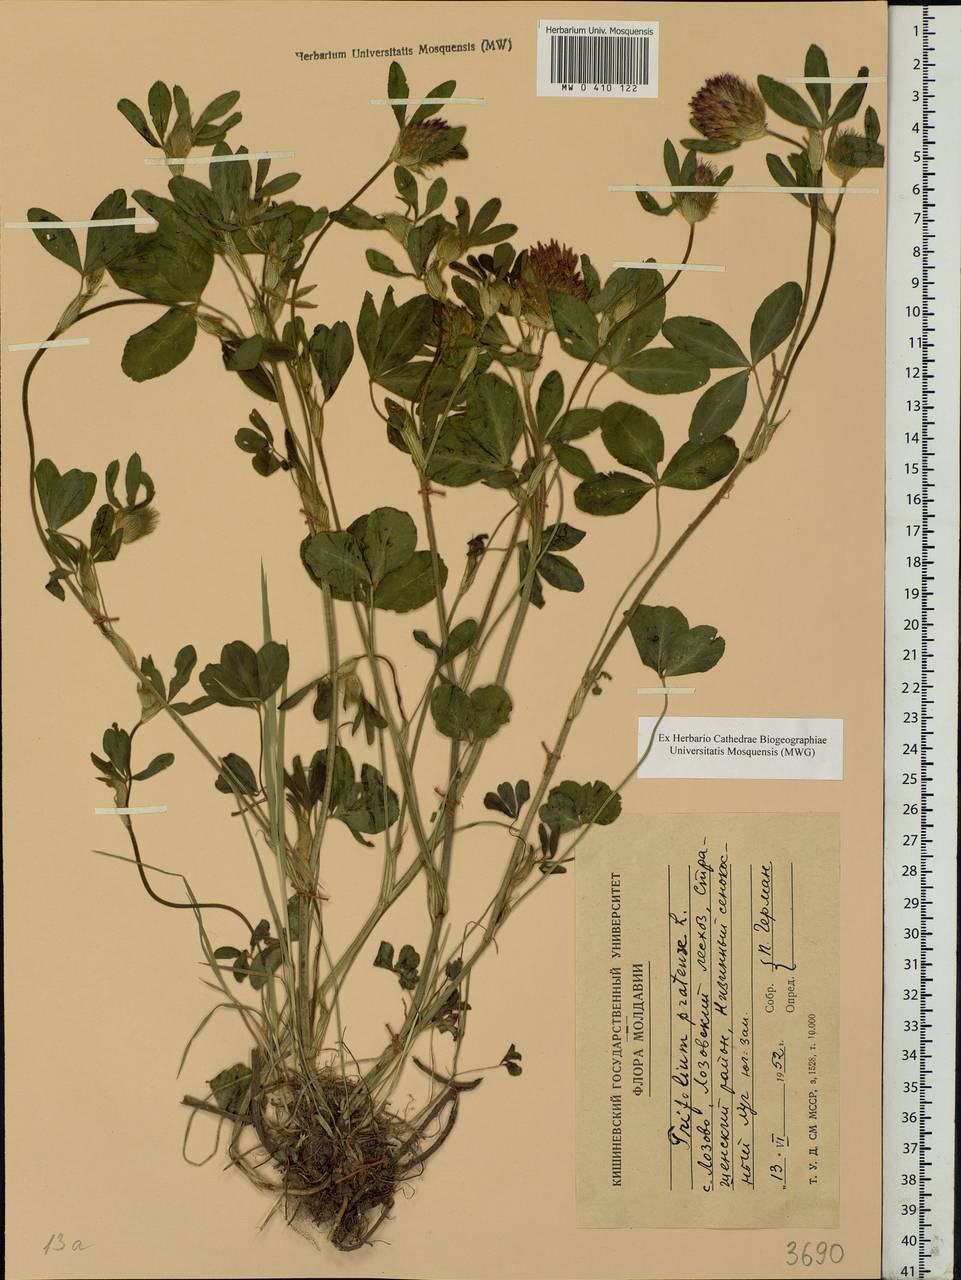 Trifolium pratense L., Eastern Europe, Moldova (E13a) (Moldova)